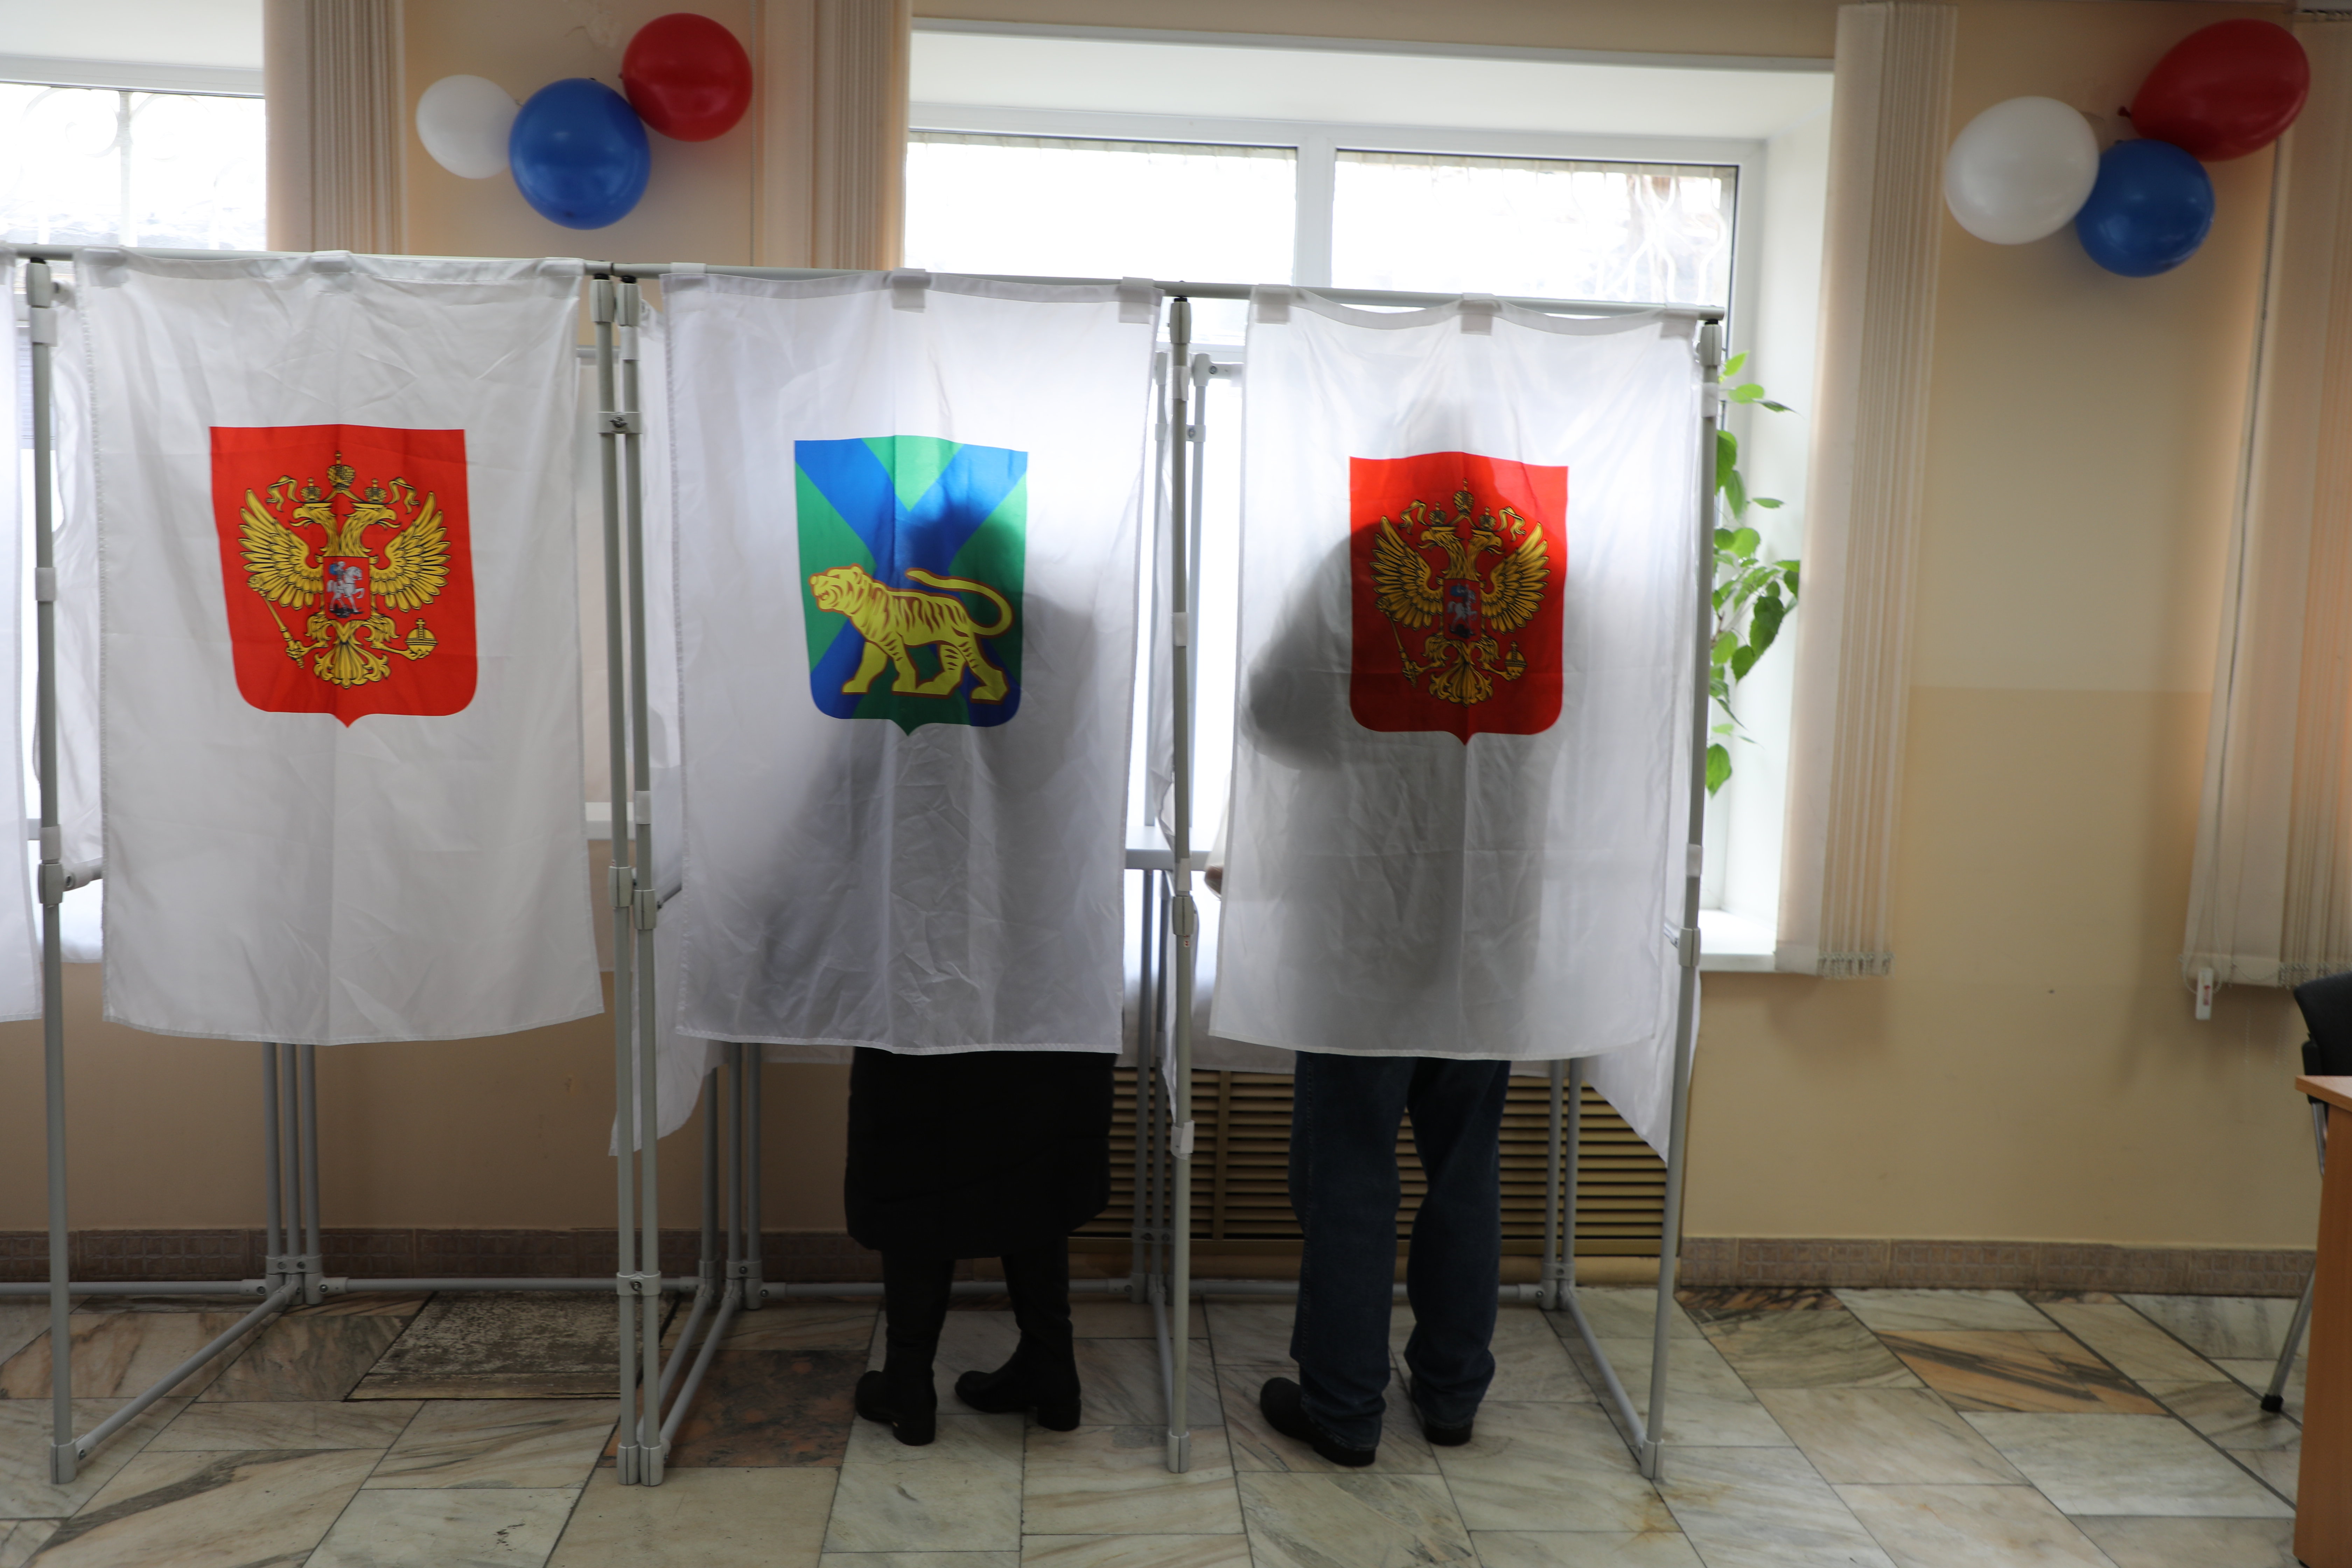 Явка на выборы президента в хабаровском крае